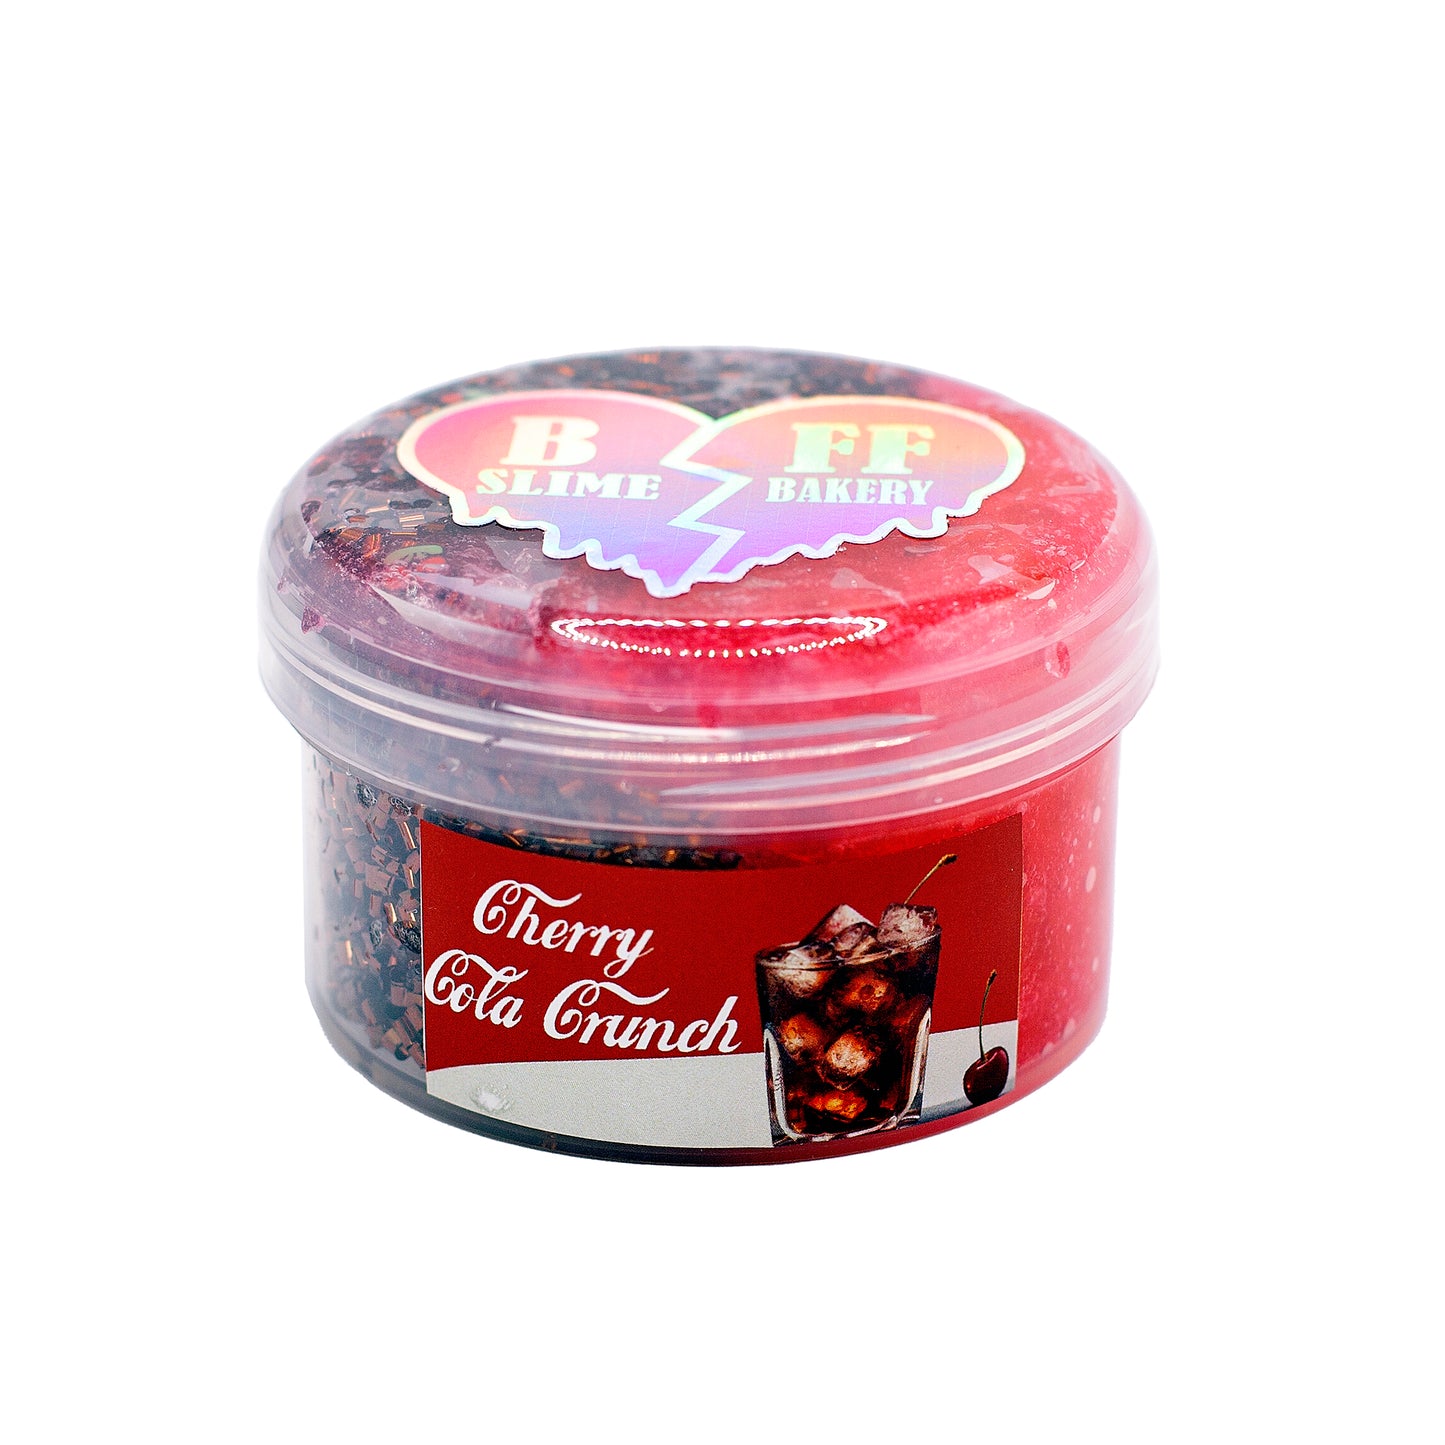 Cherry Cola Crunch